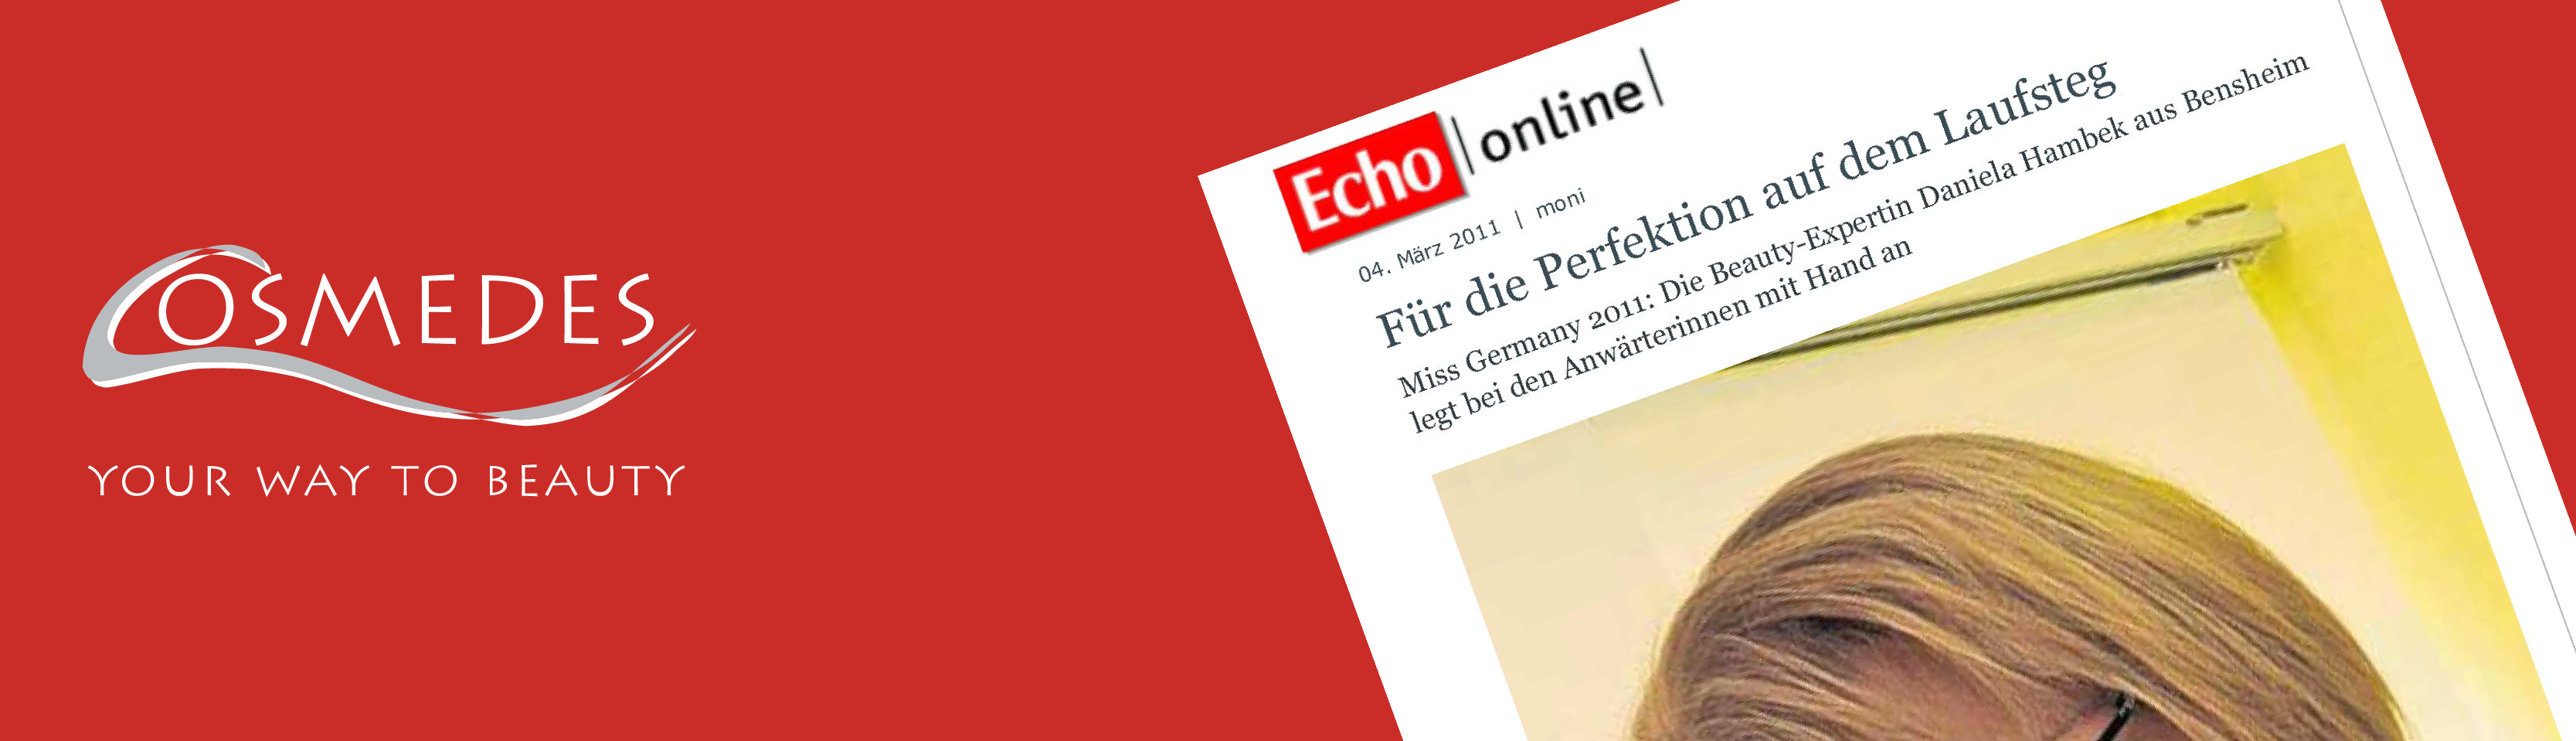 Banner Presse Echo-Online "Für die Perfektion auf dem Laufsteg"